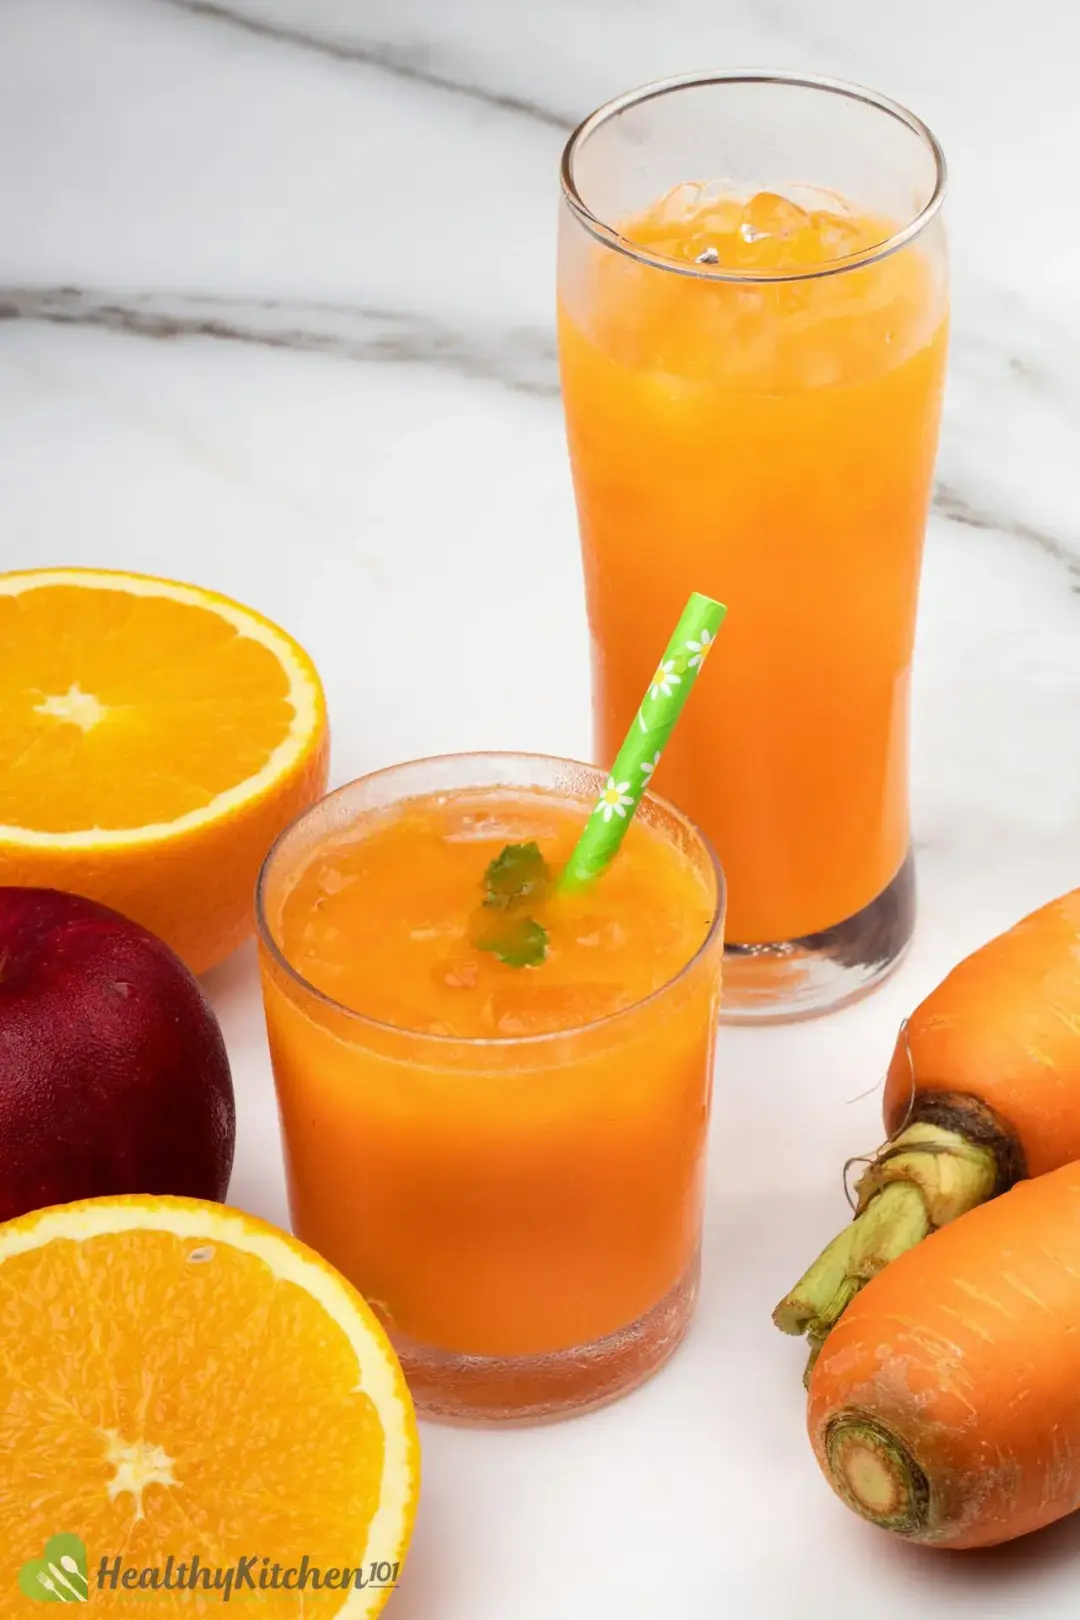 Carrot Apple Juice Healthykitchen101 4